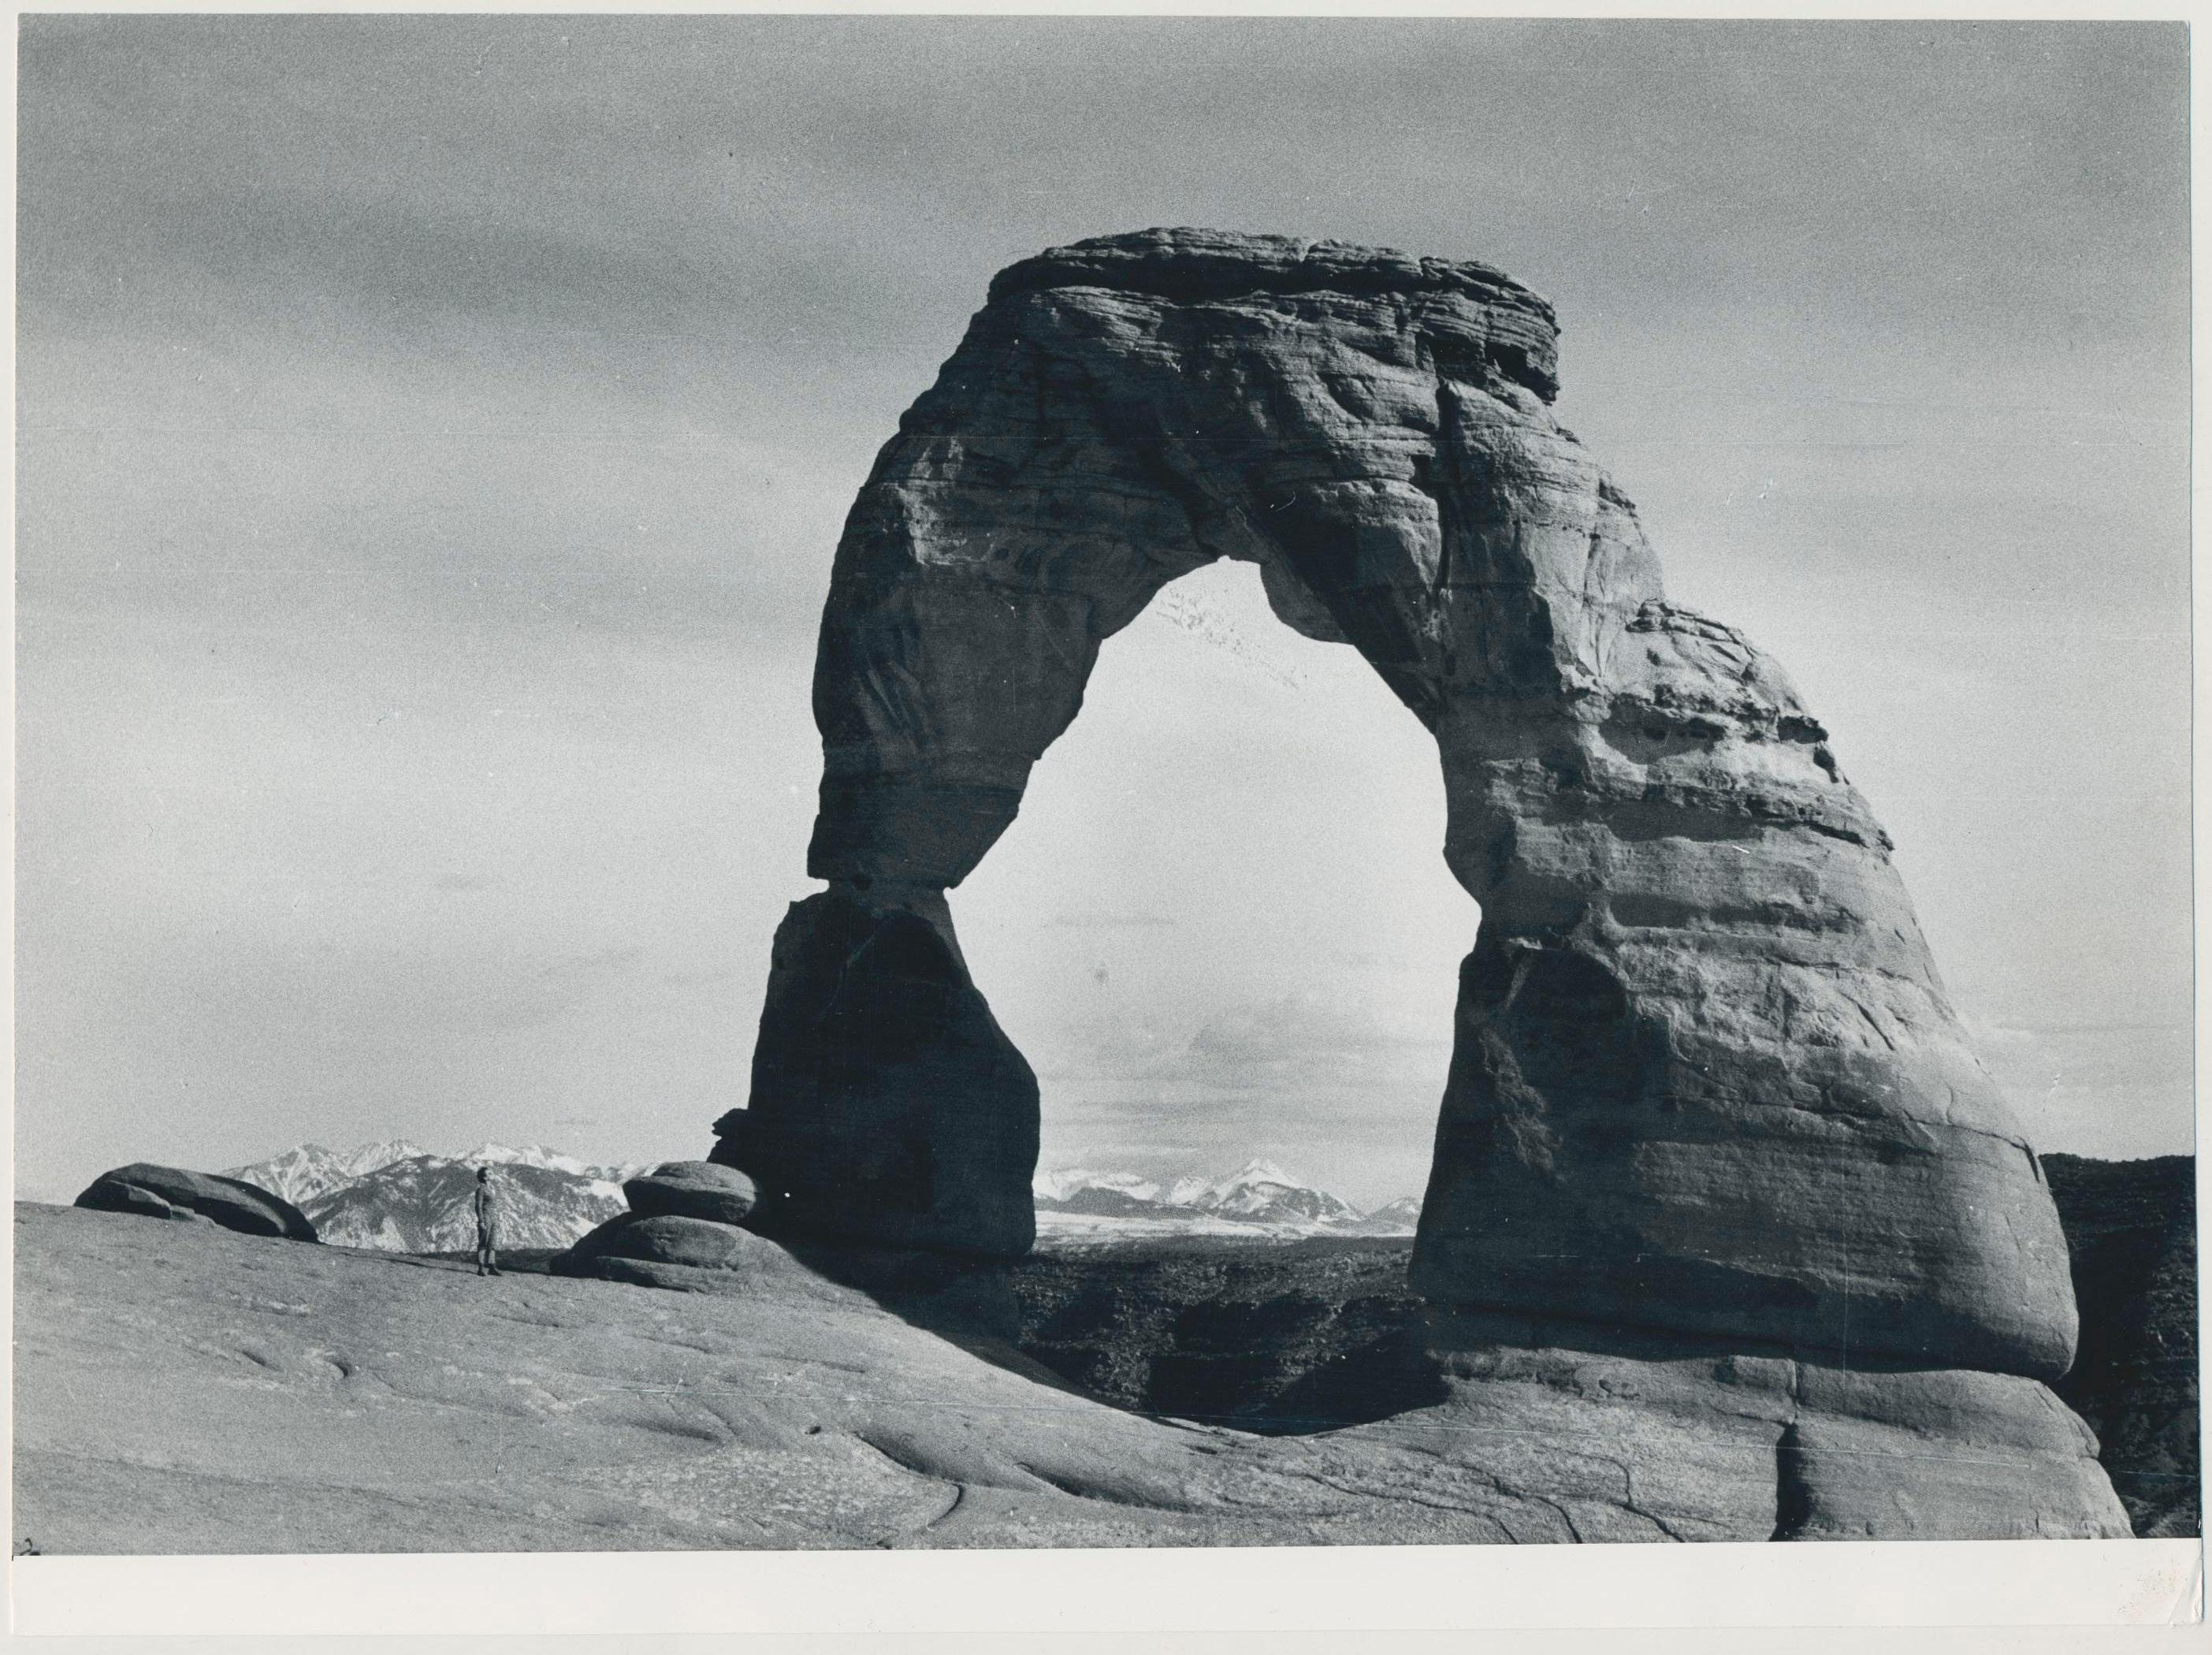 Arches Nationalpark, Utah, Schwarz und Weiß, USA 1960er Jahre, 17,3 x 23,3 cm